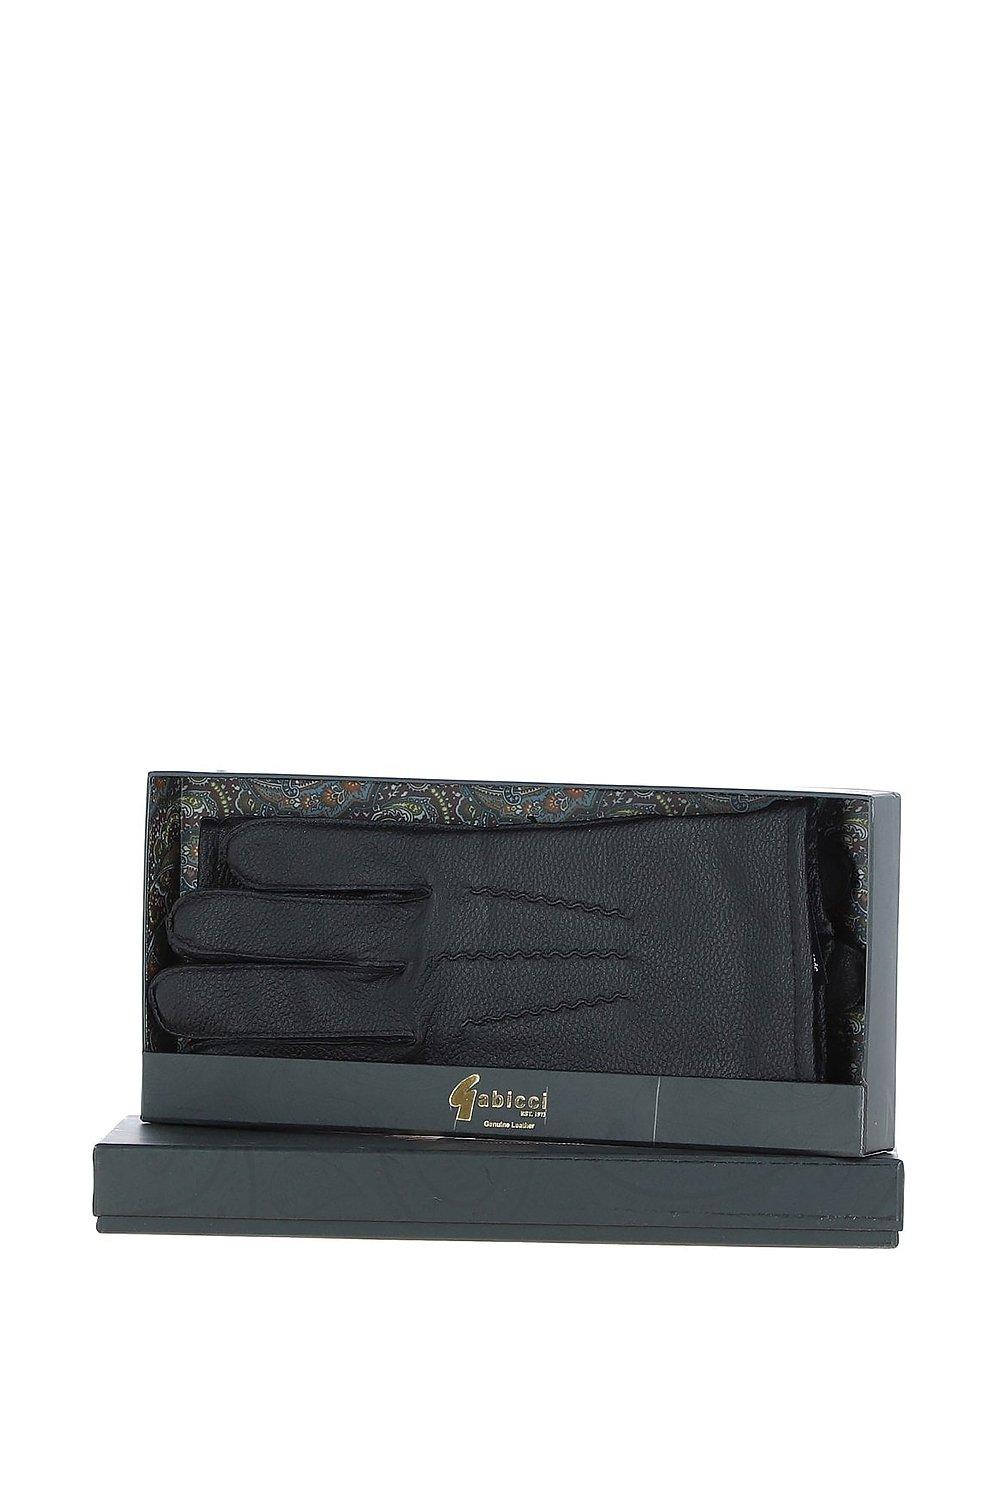 перчатки мужские кожаные yimei Перчатки '520' из мягкой кожи ягненка и натуральной кожи с флисовой подкладкой GABICCI, черный